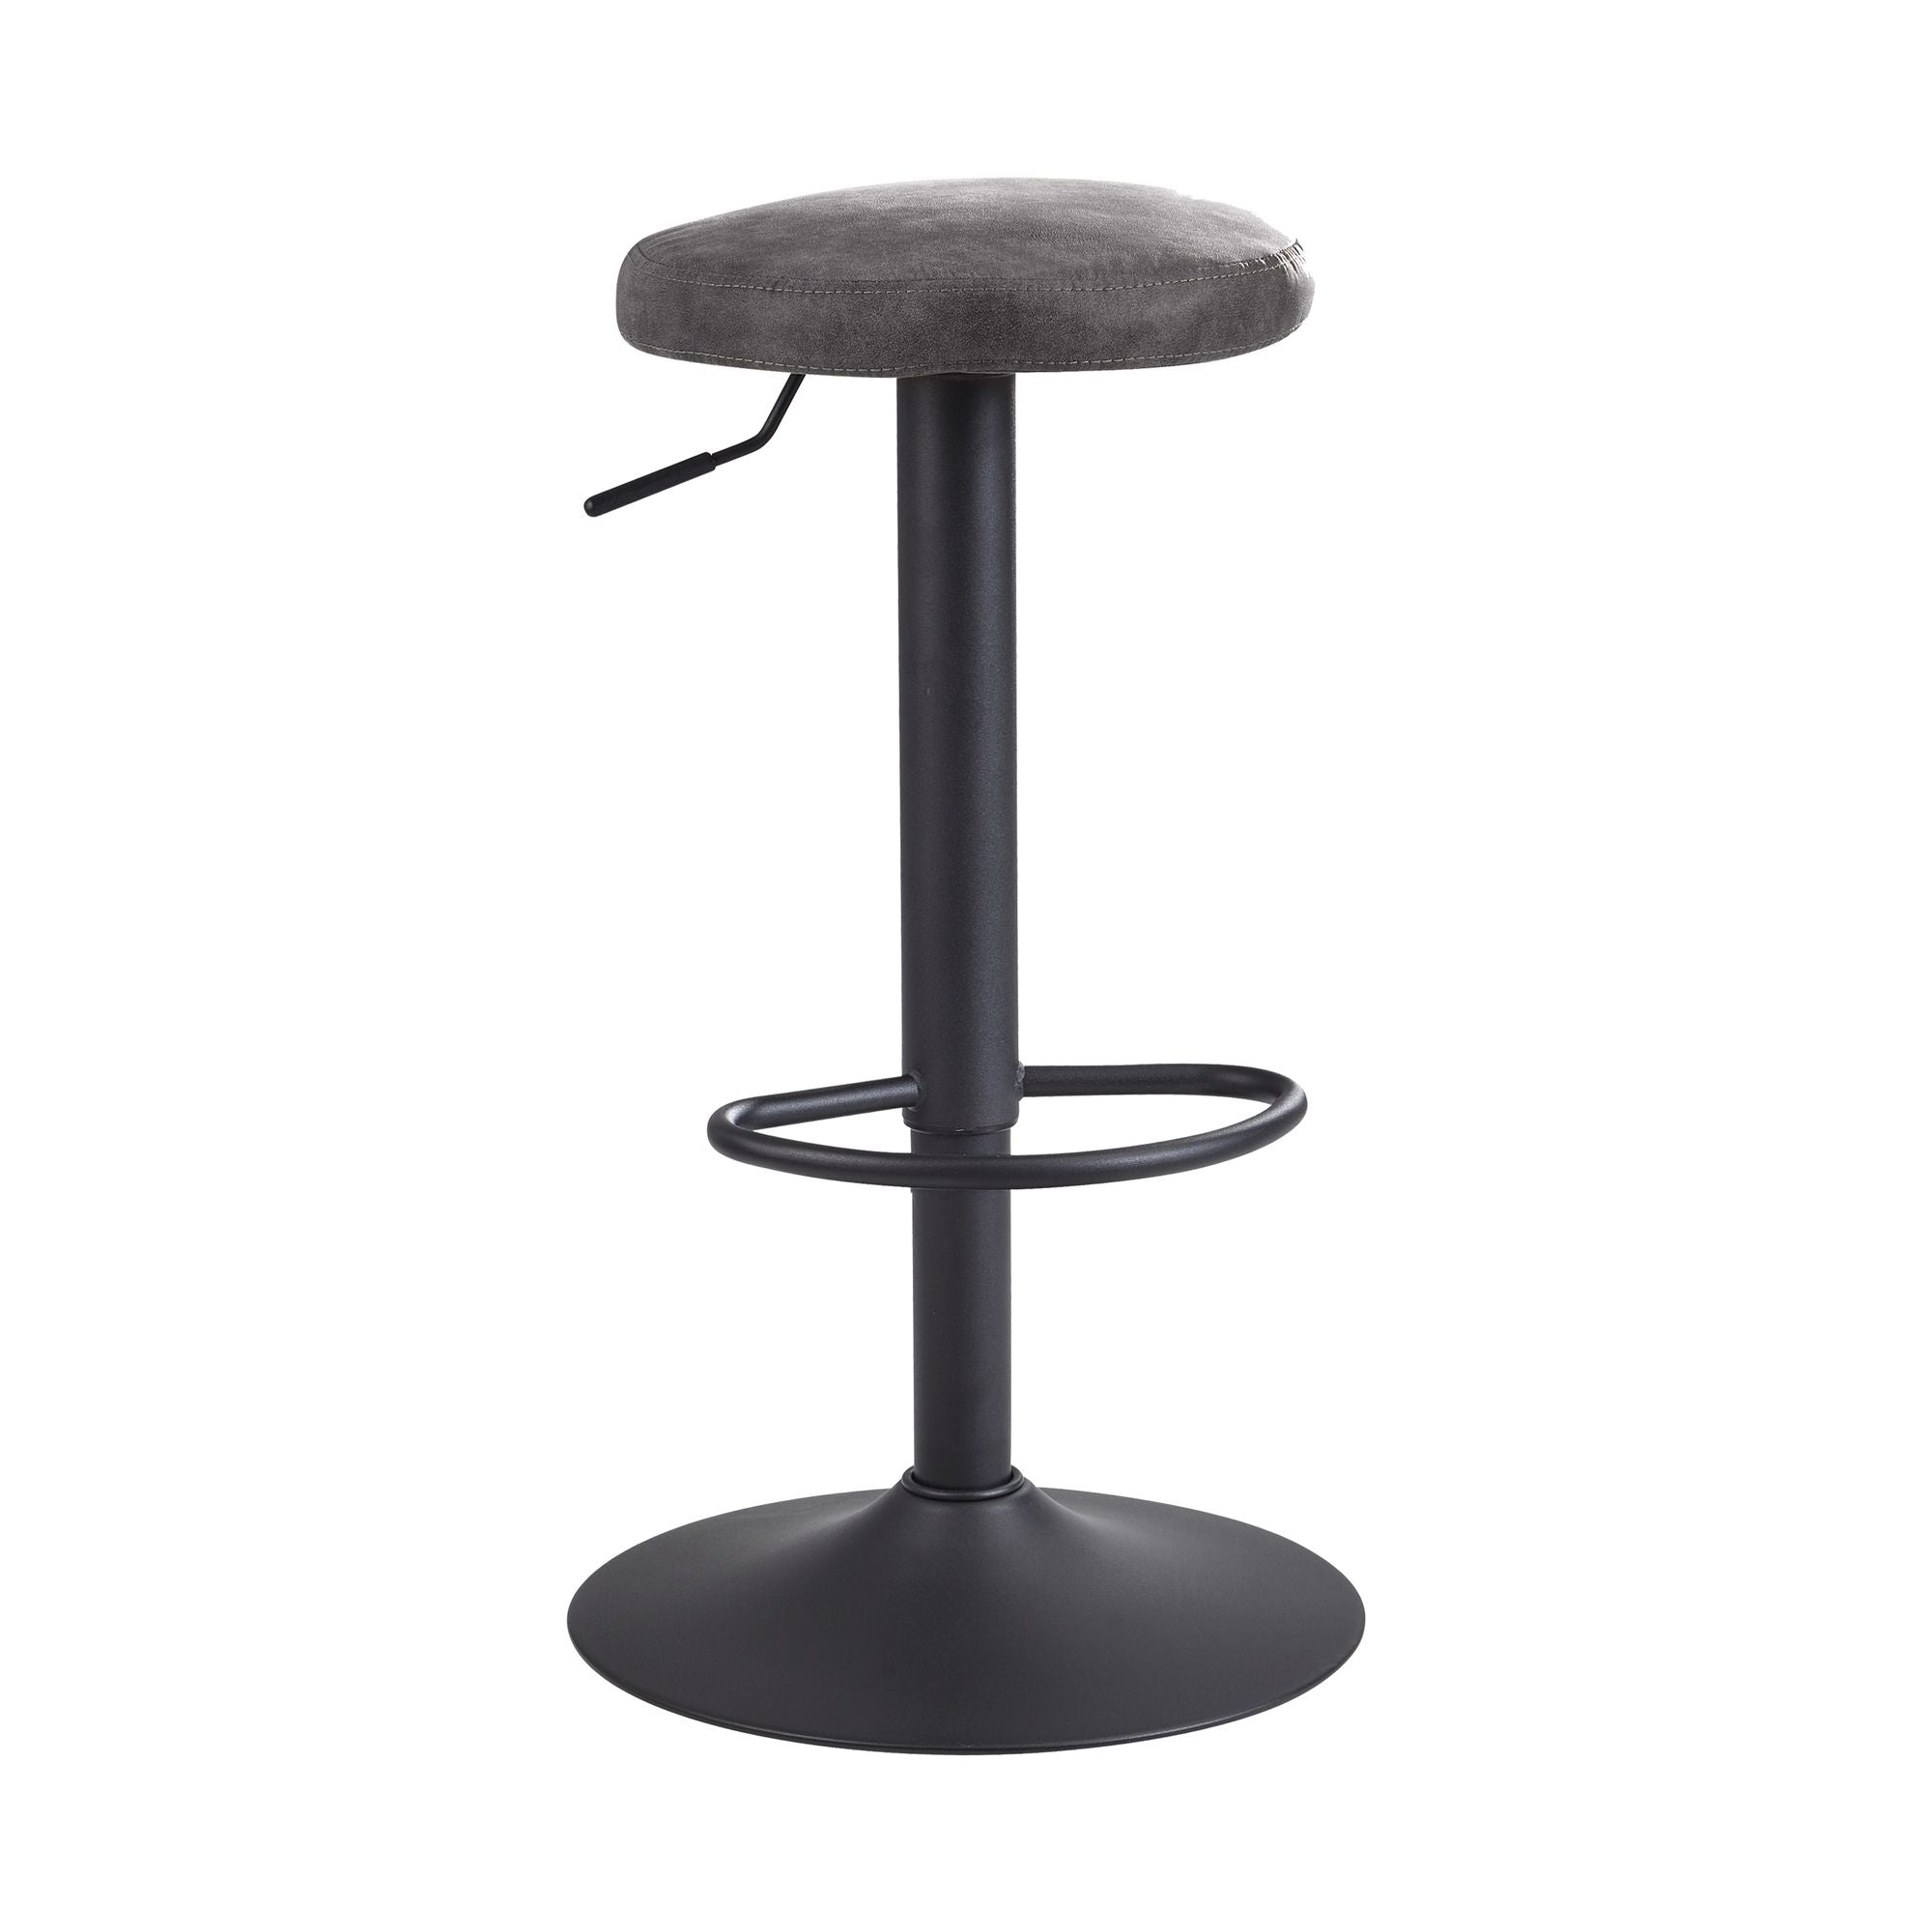 11: Roterende barstol / bistrostol, grå ruskind skammel uden ryglæn, 58-79 cm